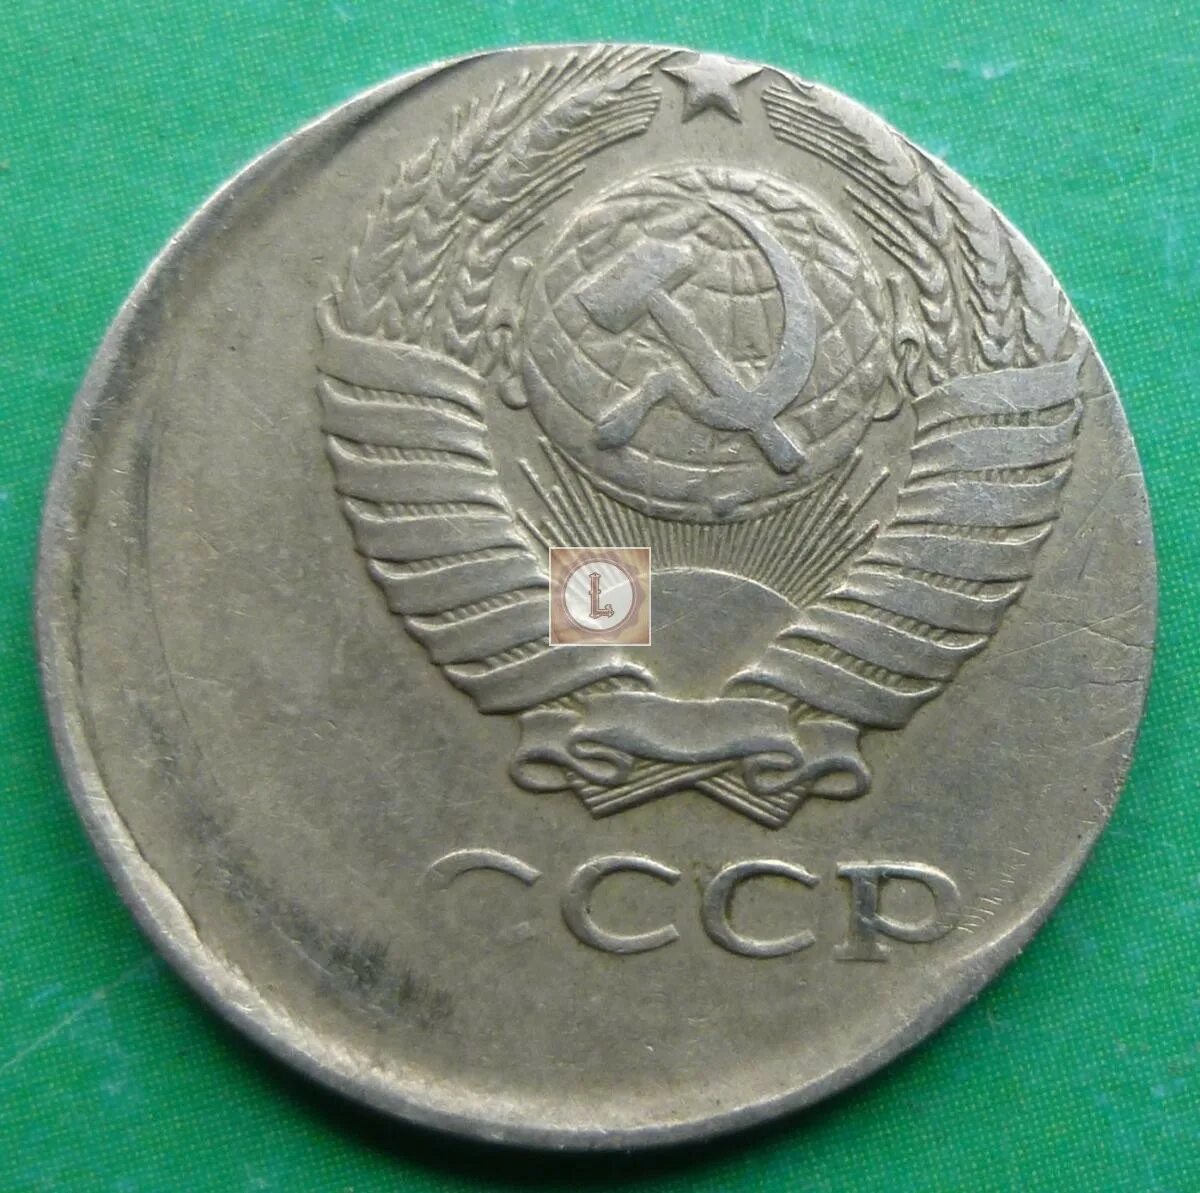 10 Копеек 1984. Копеек 1984 года. Монеты СССР 10 копеек 1984 года. 10 Копеек 1984 года редкие. 15 копеек 1984 года